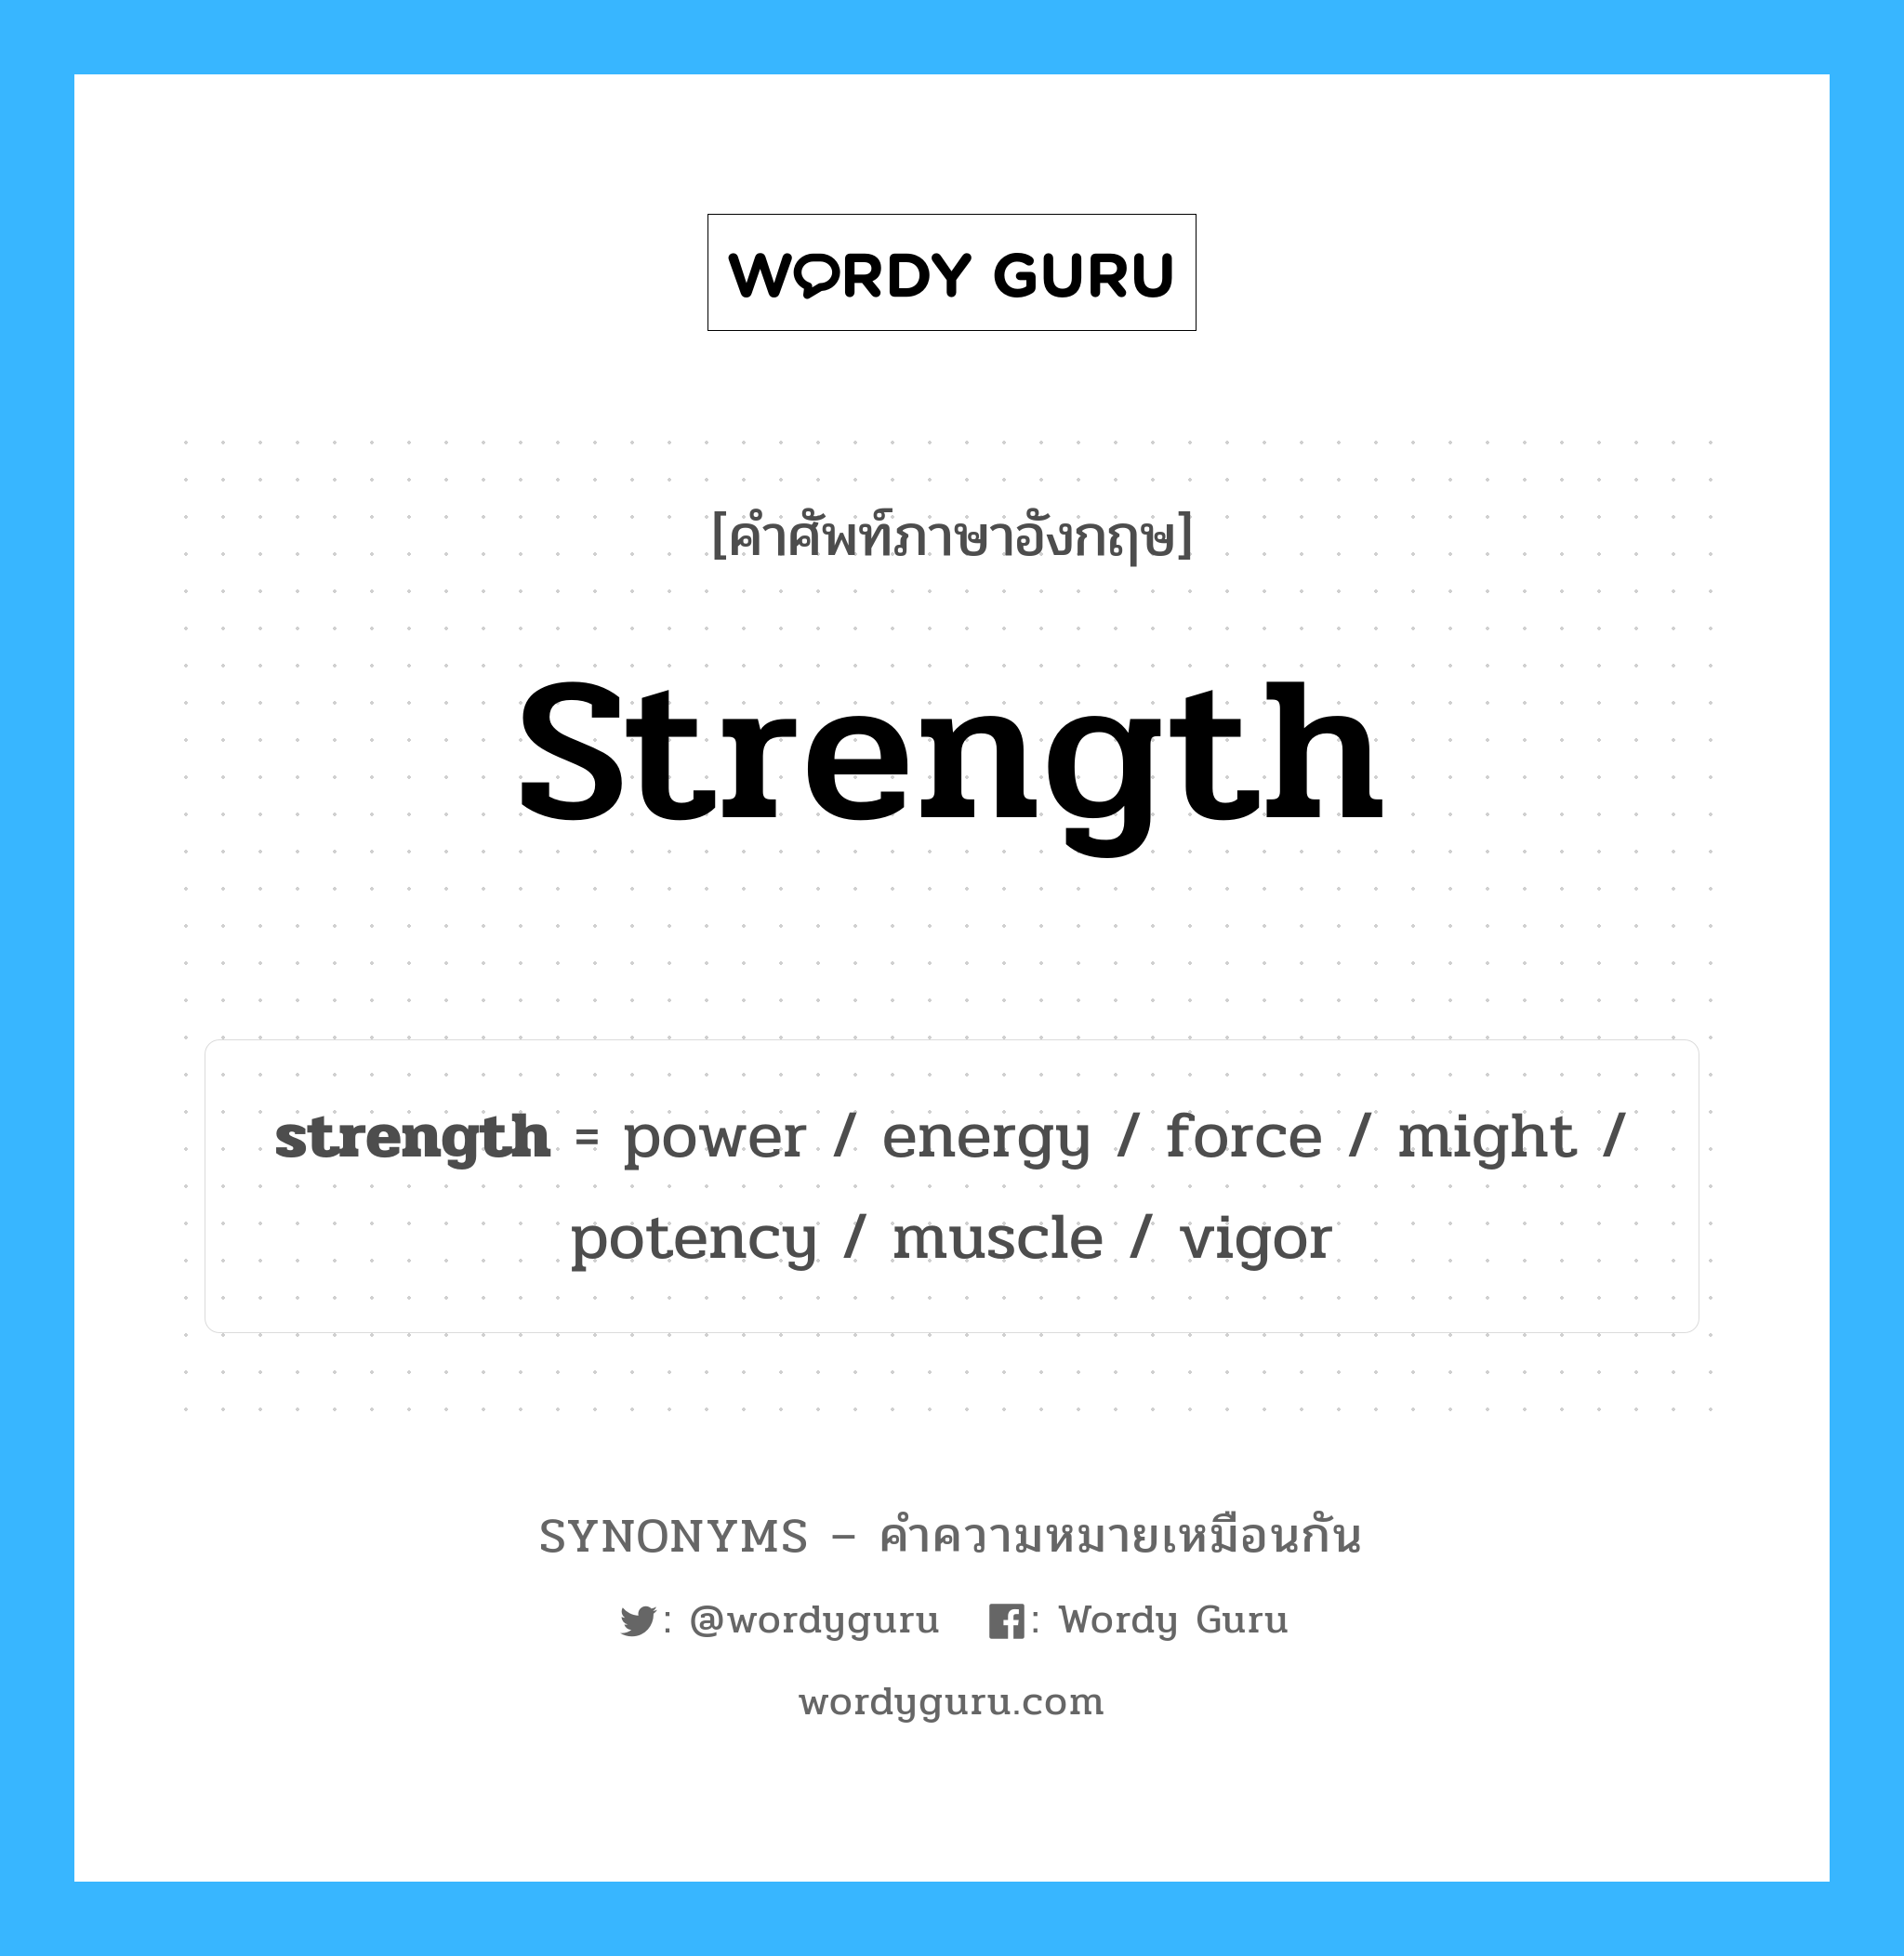 vigor เป็นหนึ่งใน strength และมีคำอื่น ๆ อีกดังนี้, คำศัพท์ภาษาอังกฤษ vigor ความหมายคล้ายกันกับ strength แปลว่า ความแข็งแรง หมวด strength